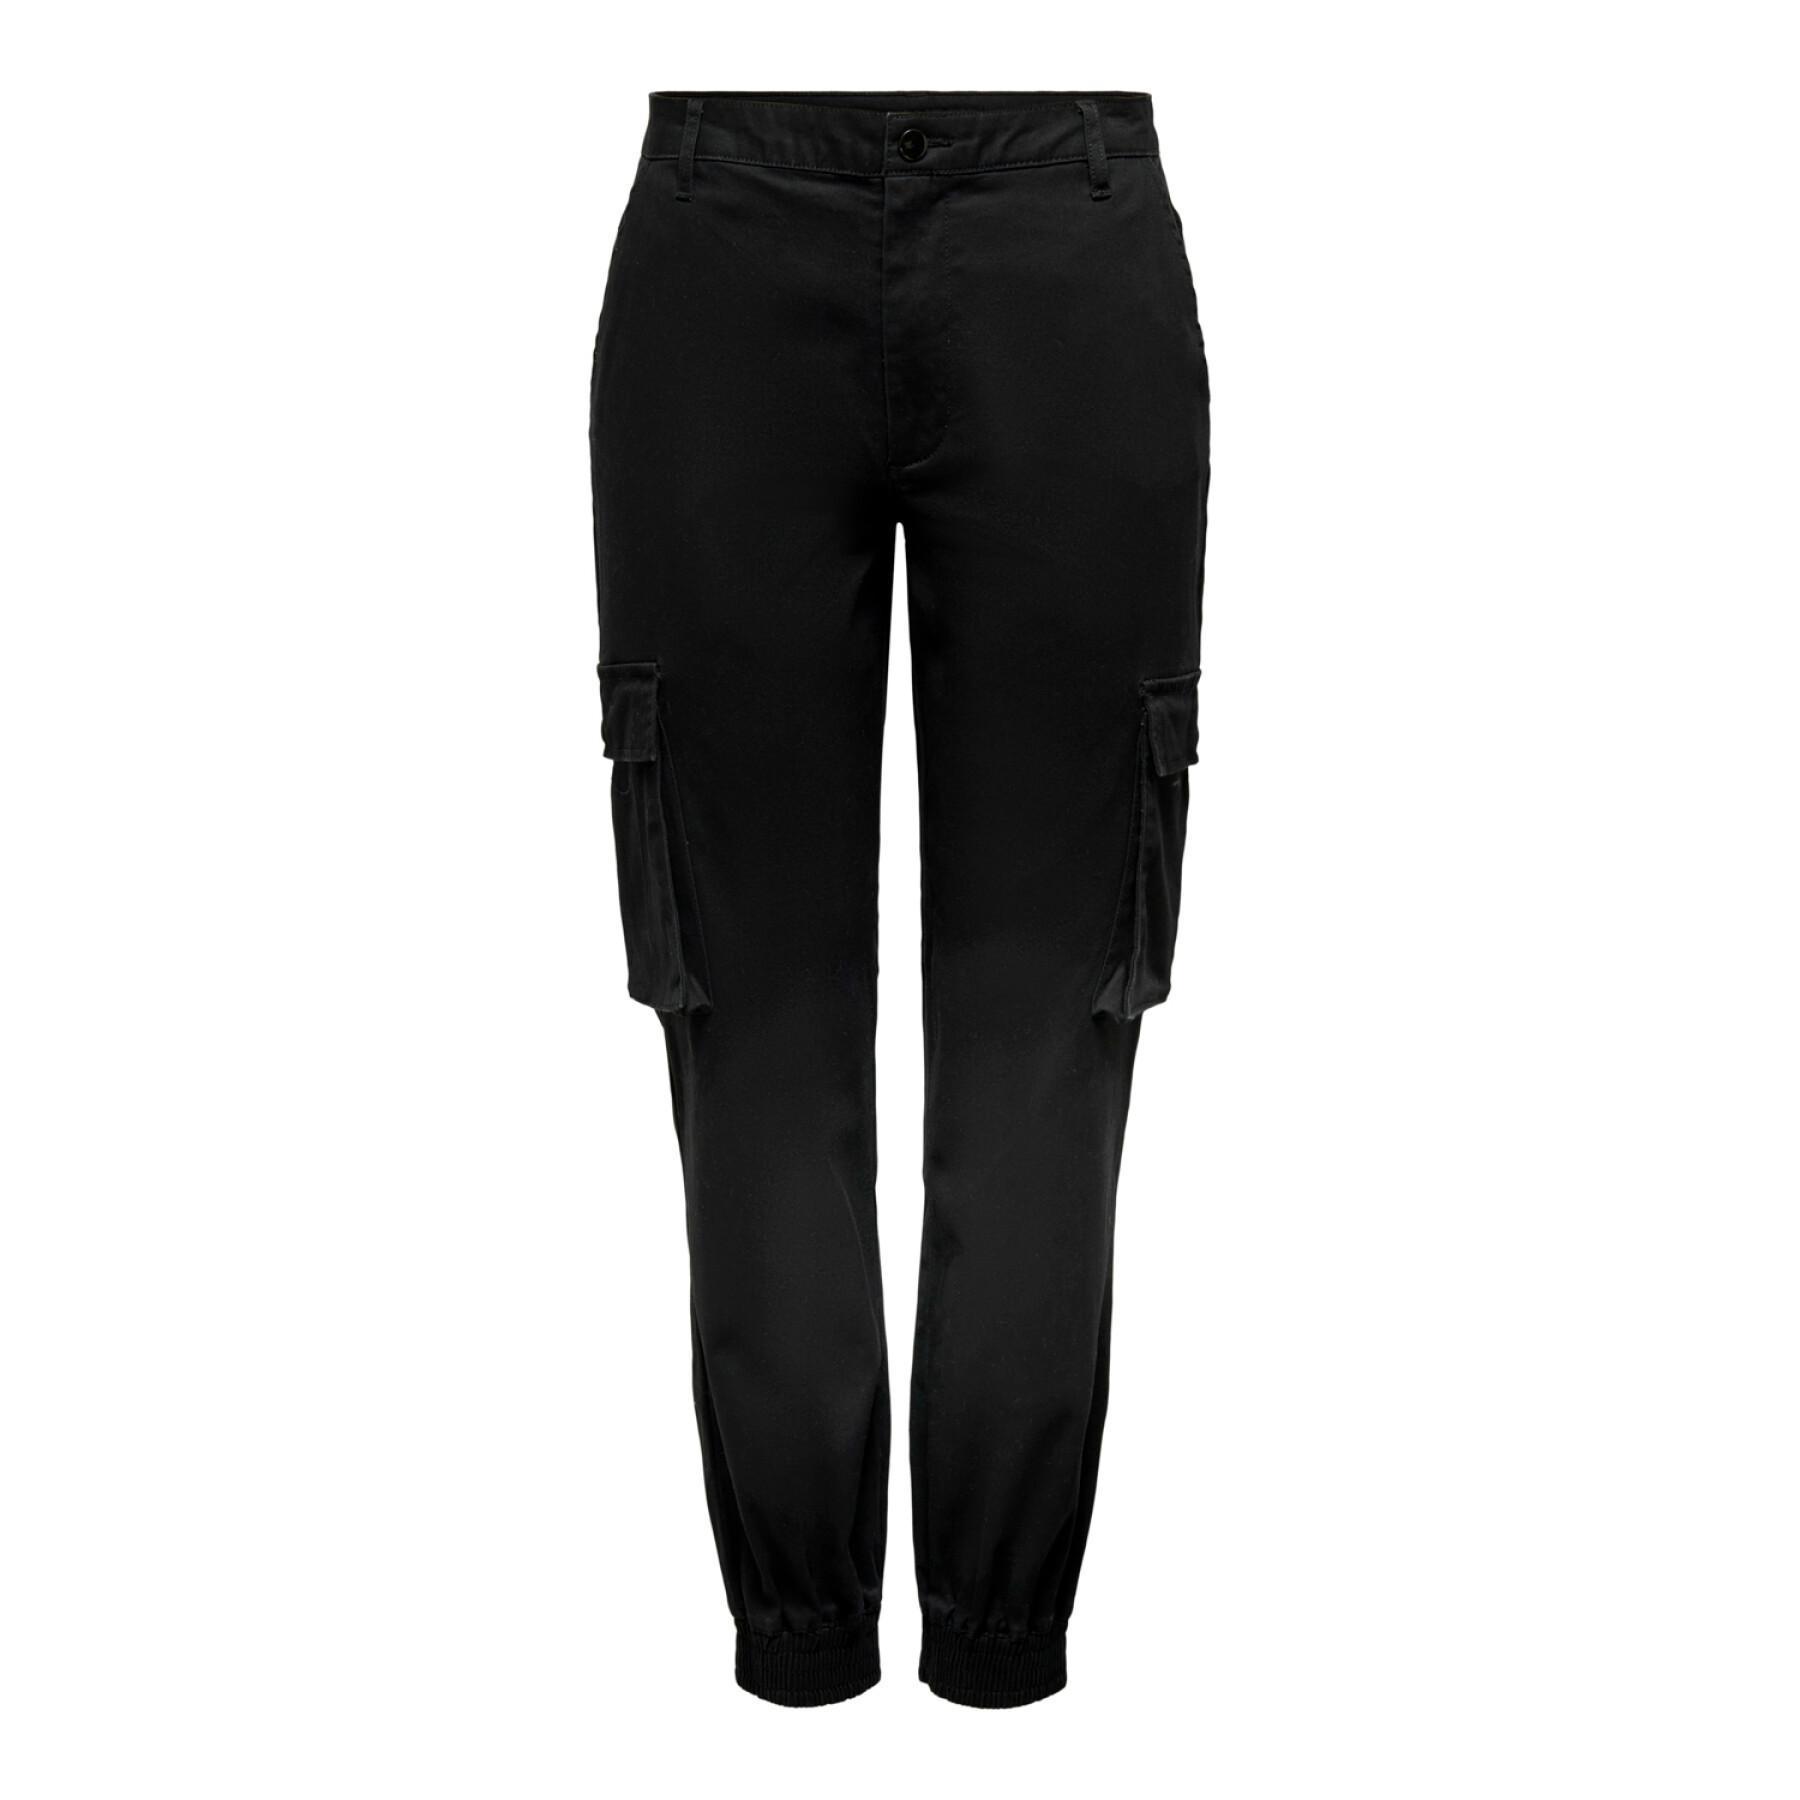 Pantalon cargo femme Only onlb-alva - noir - 40x30